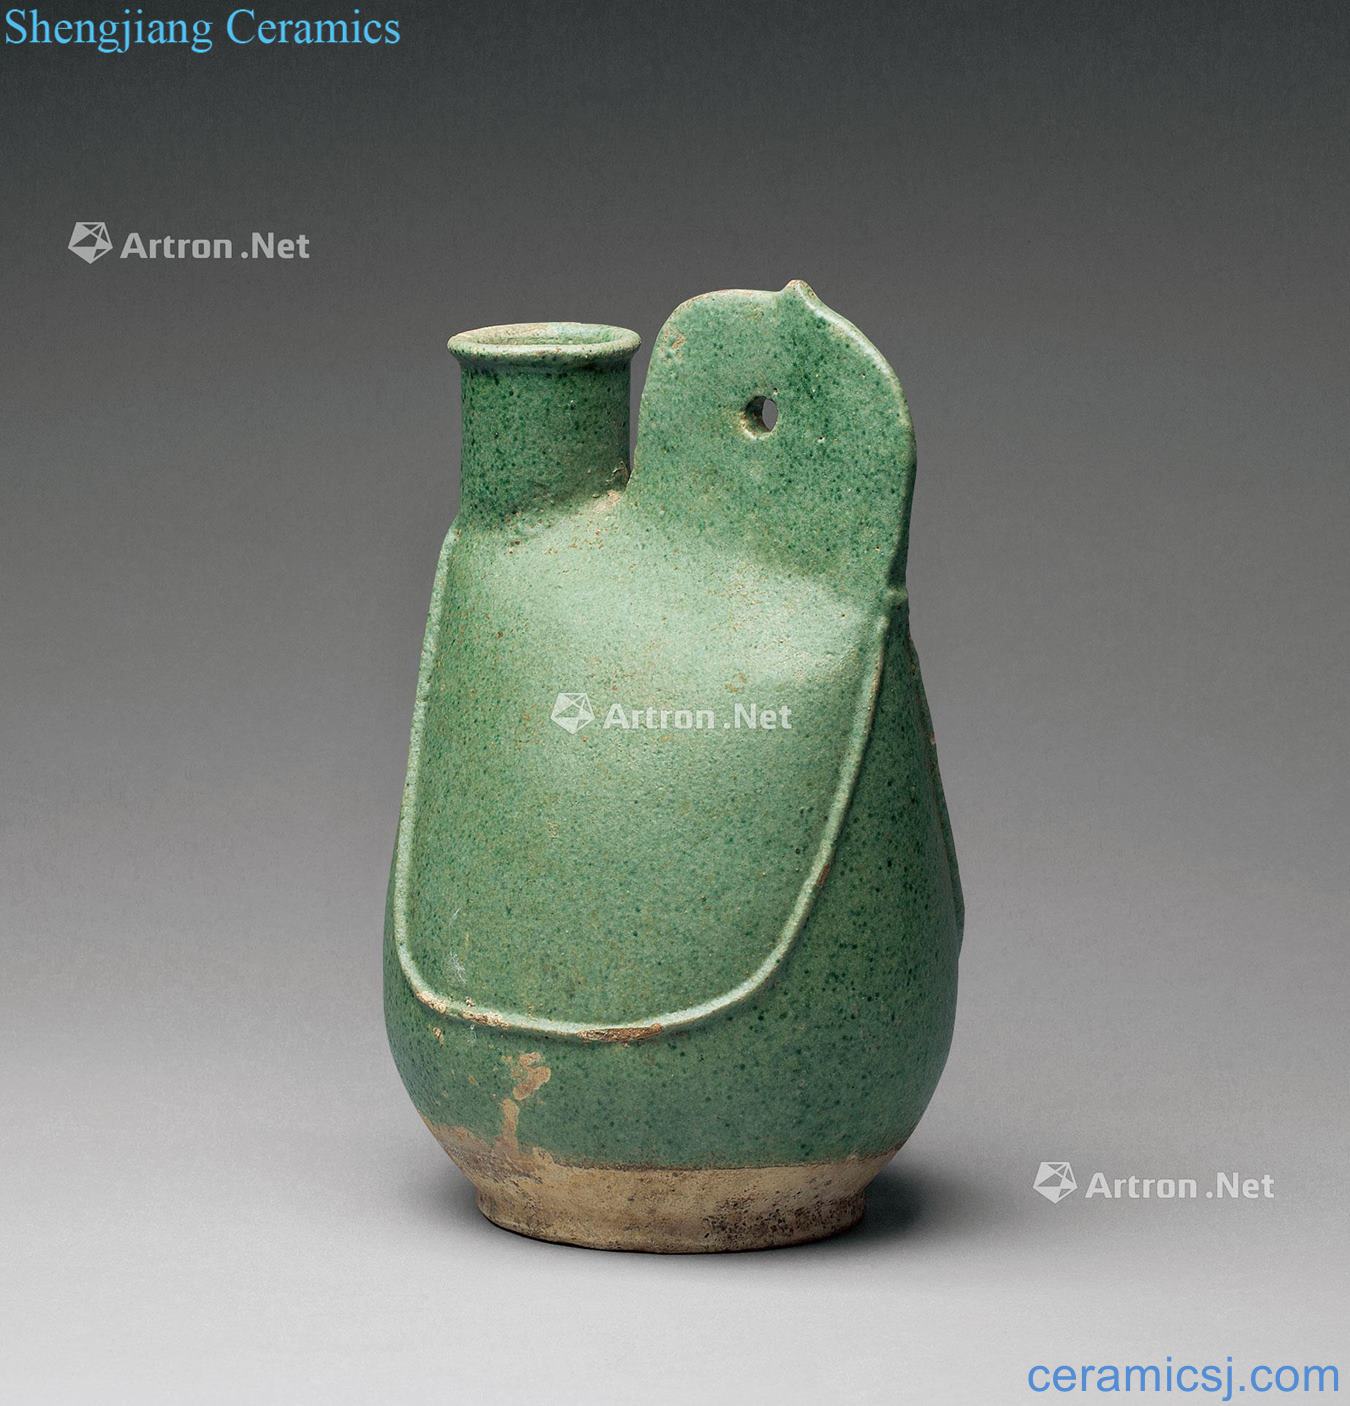 Liao dynasty pot of green glaze skins